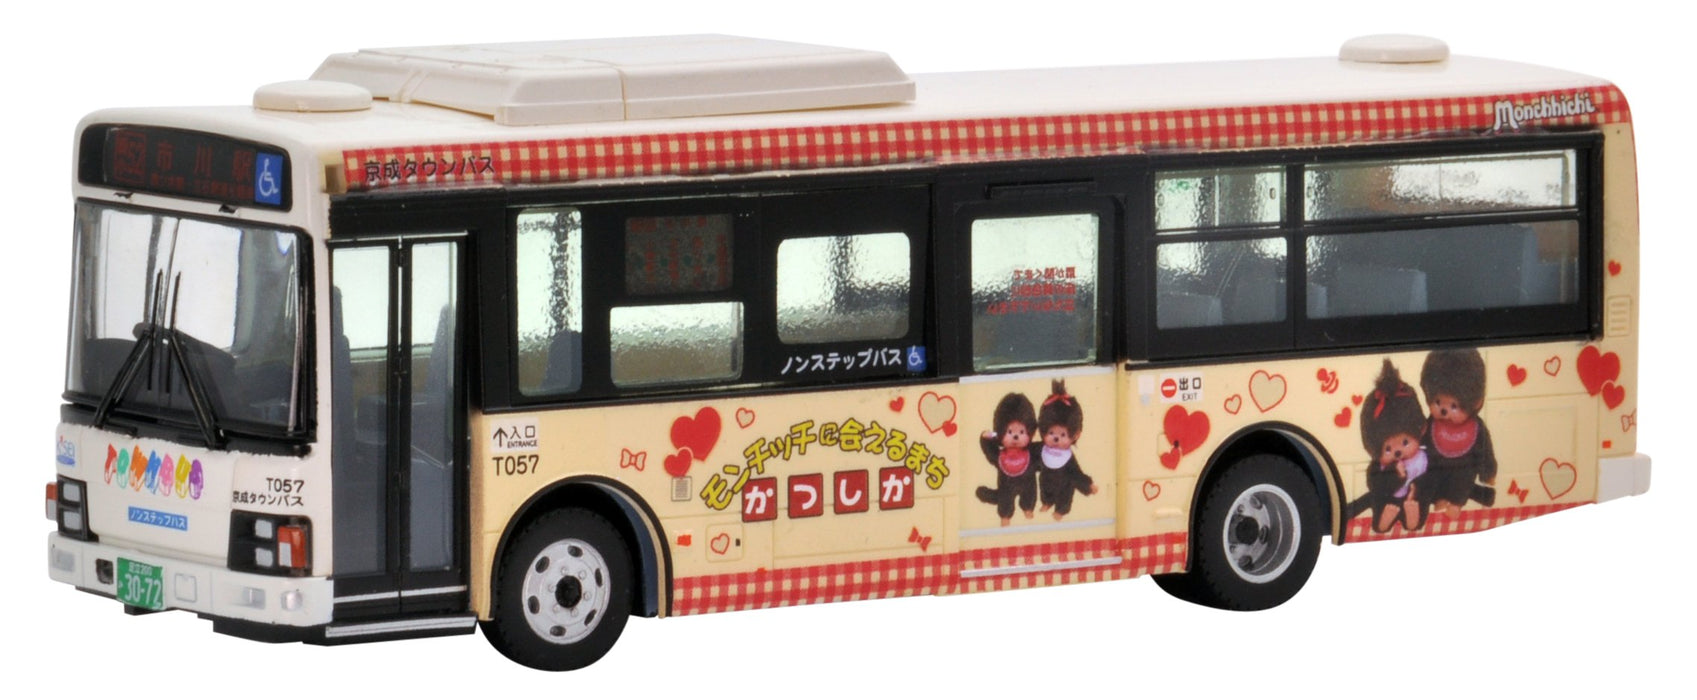 Tomytec National Bus Collection Jh022 1/80 Keisei Town Katsushika Wrapping Bus Foto Edition